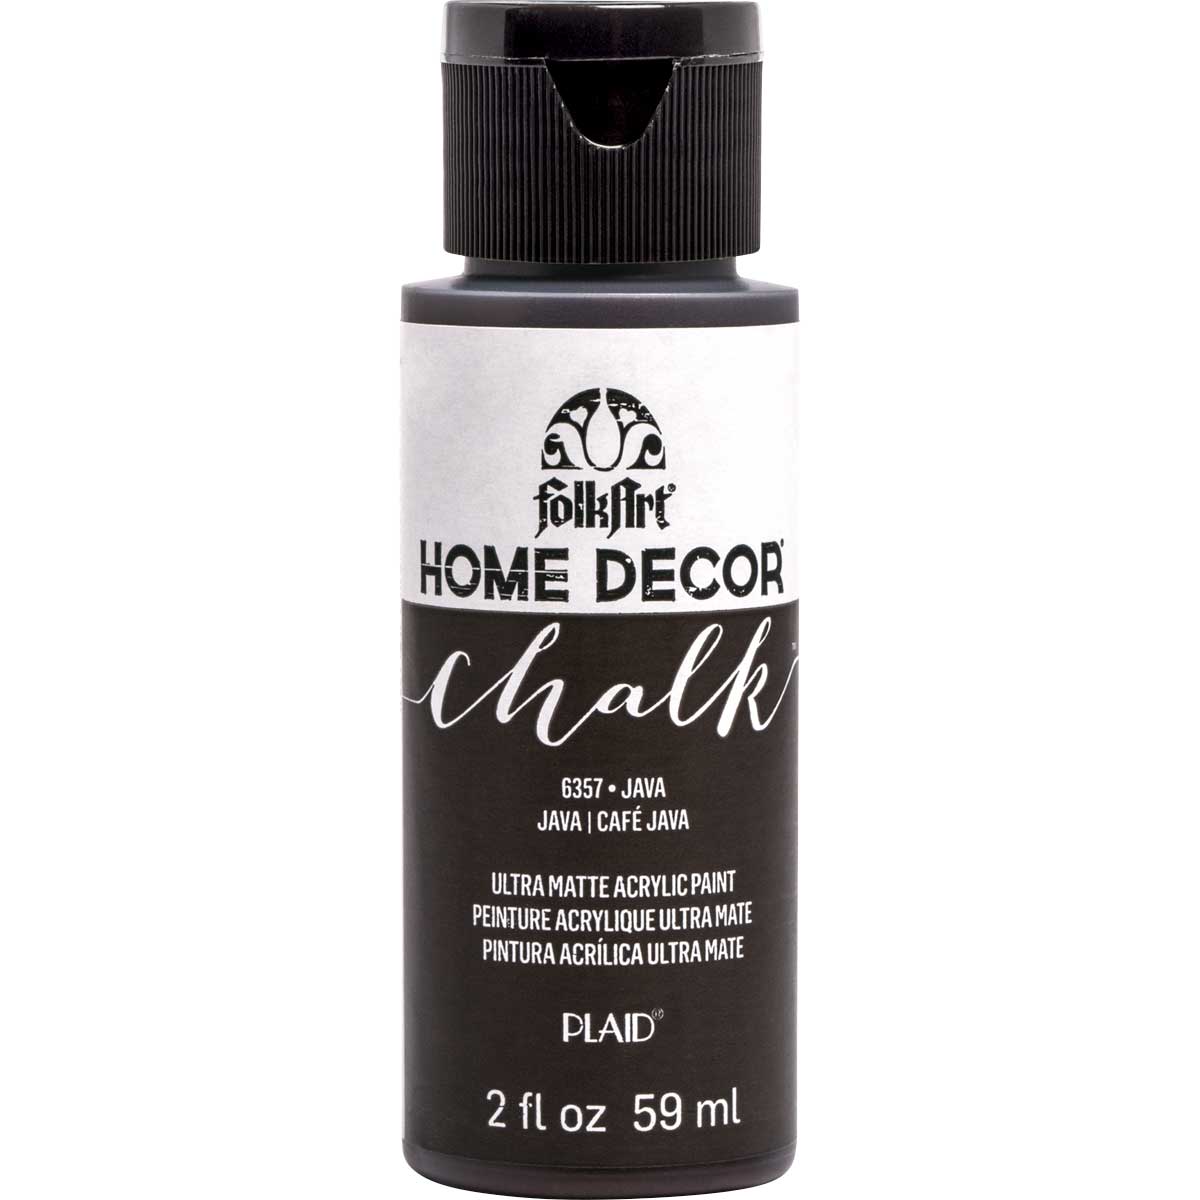 FolkArt Home Decor Chalk - Java, 2 oz. - 6357